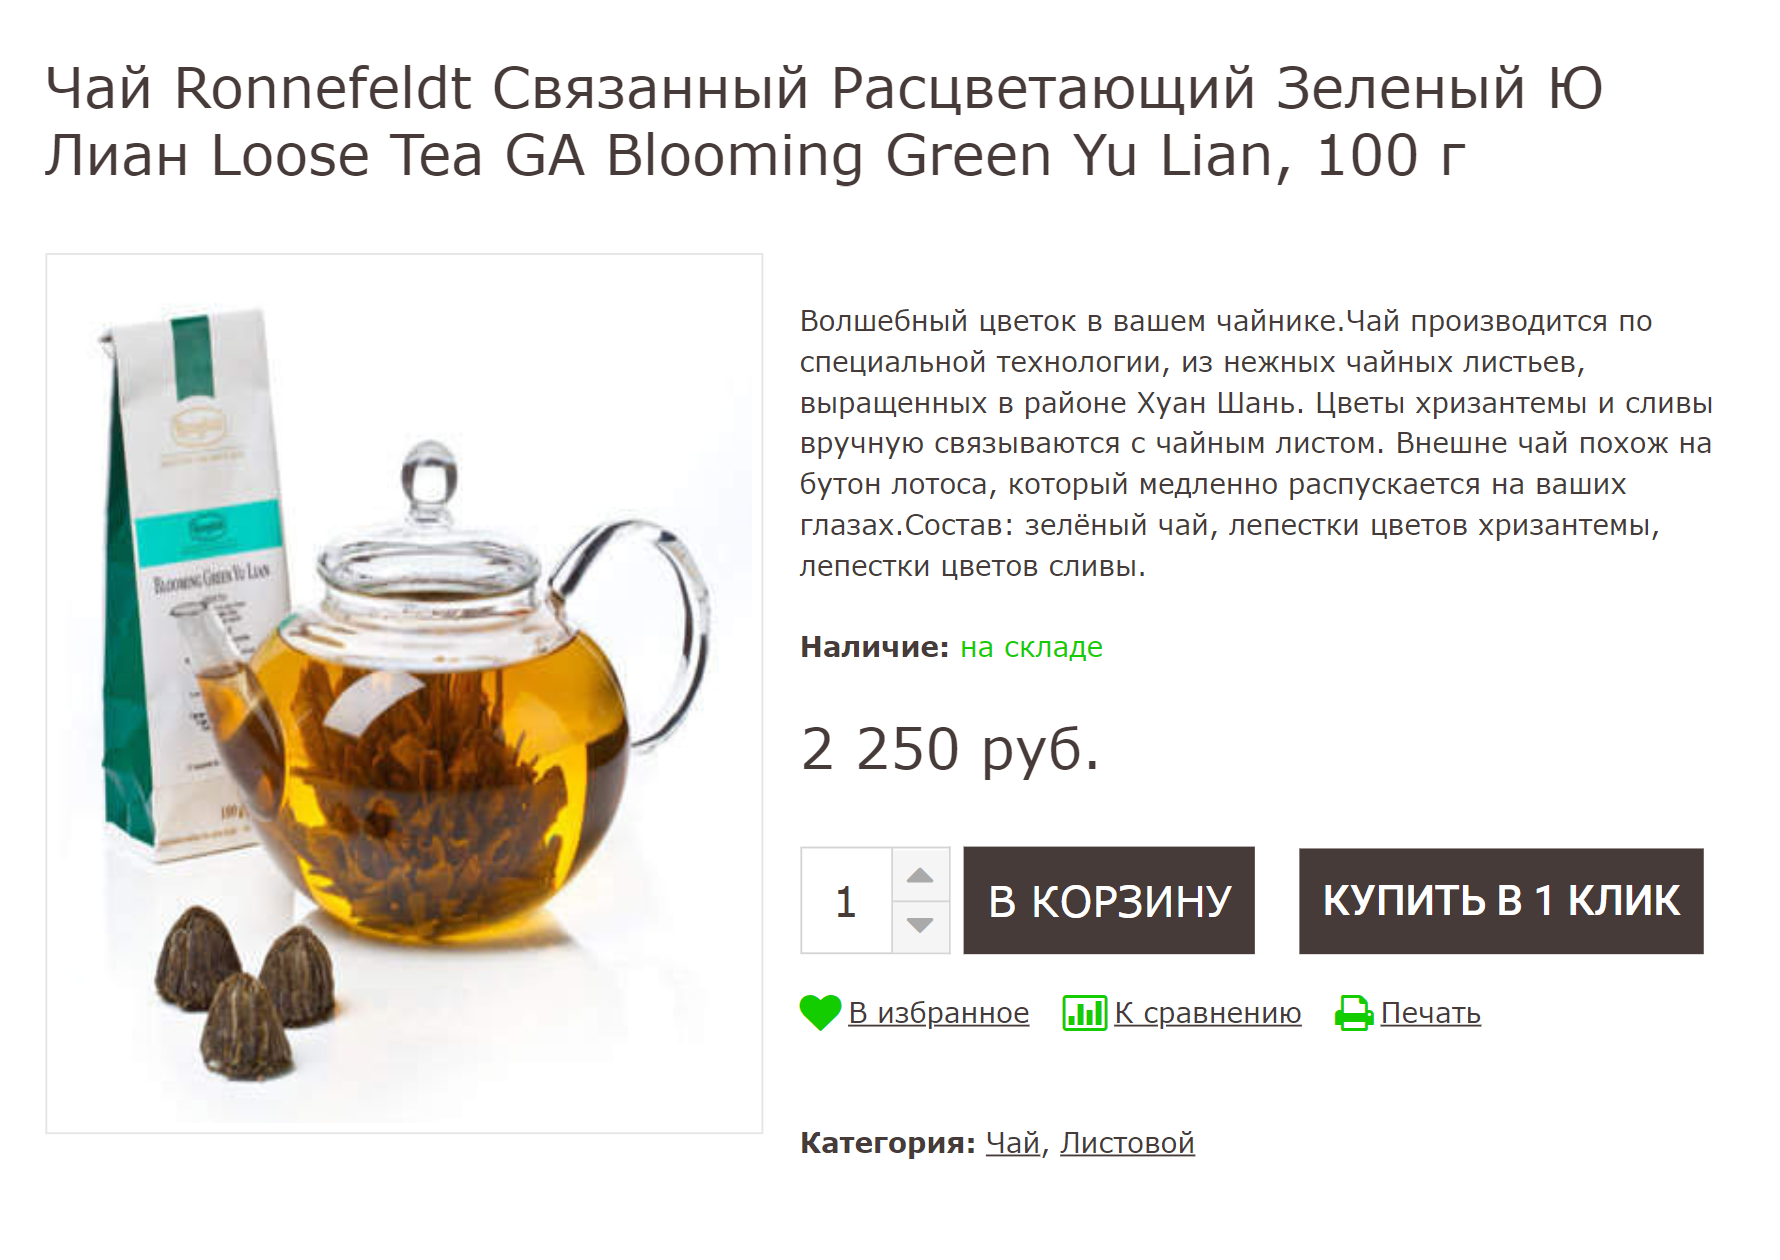 «Расцветающий» чай до и после заварки. На сайте продавца про сорт ничего не сказано — только что чай зеленый. При этом цена — 2250 ₽ за 100 г, как за превосходный китайский чай. Источник: prokofef.ru